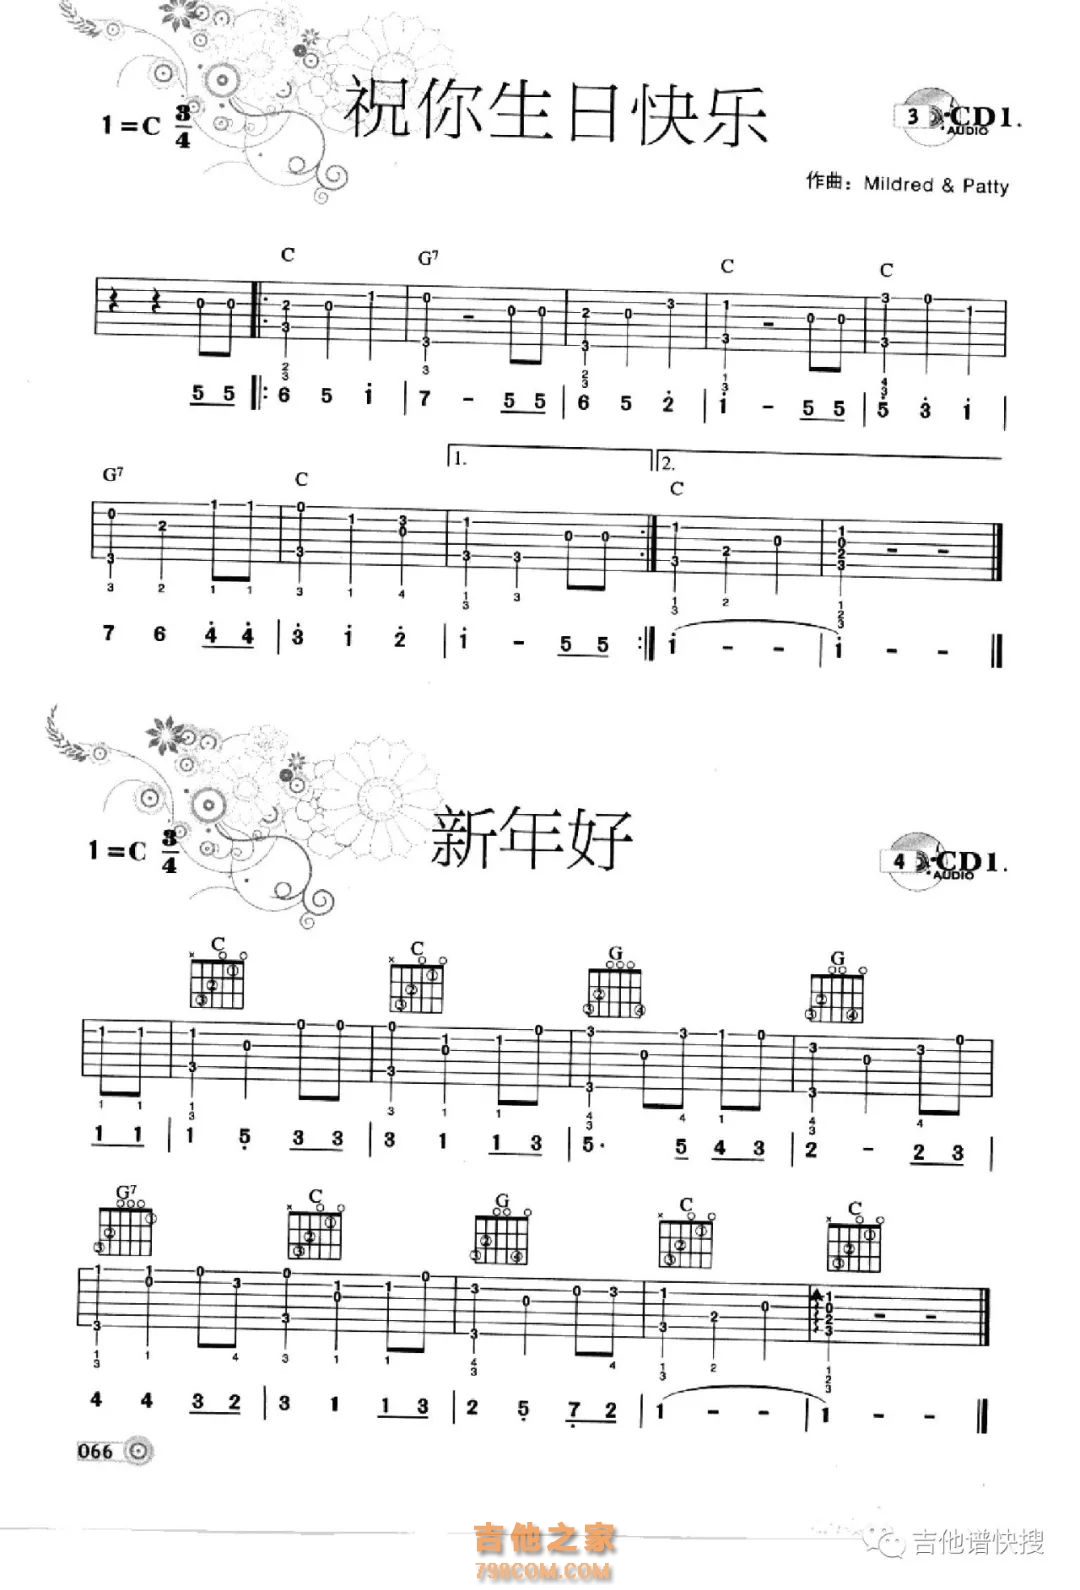 儿歌《新年好》尤克里里谱及教学视频【白熊音乐】 - 尤克里里谱 - 吉他之家